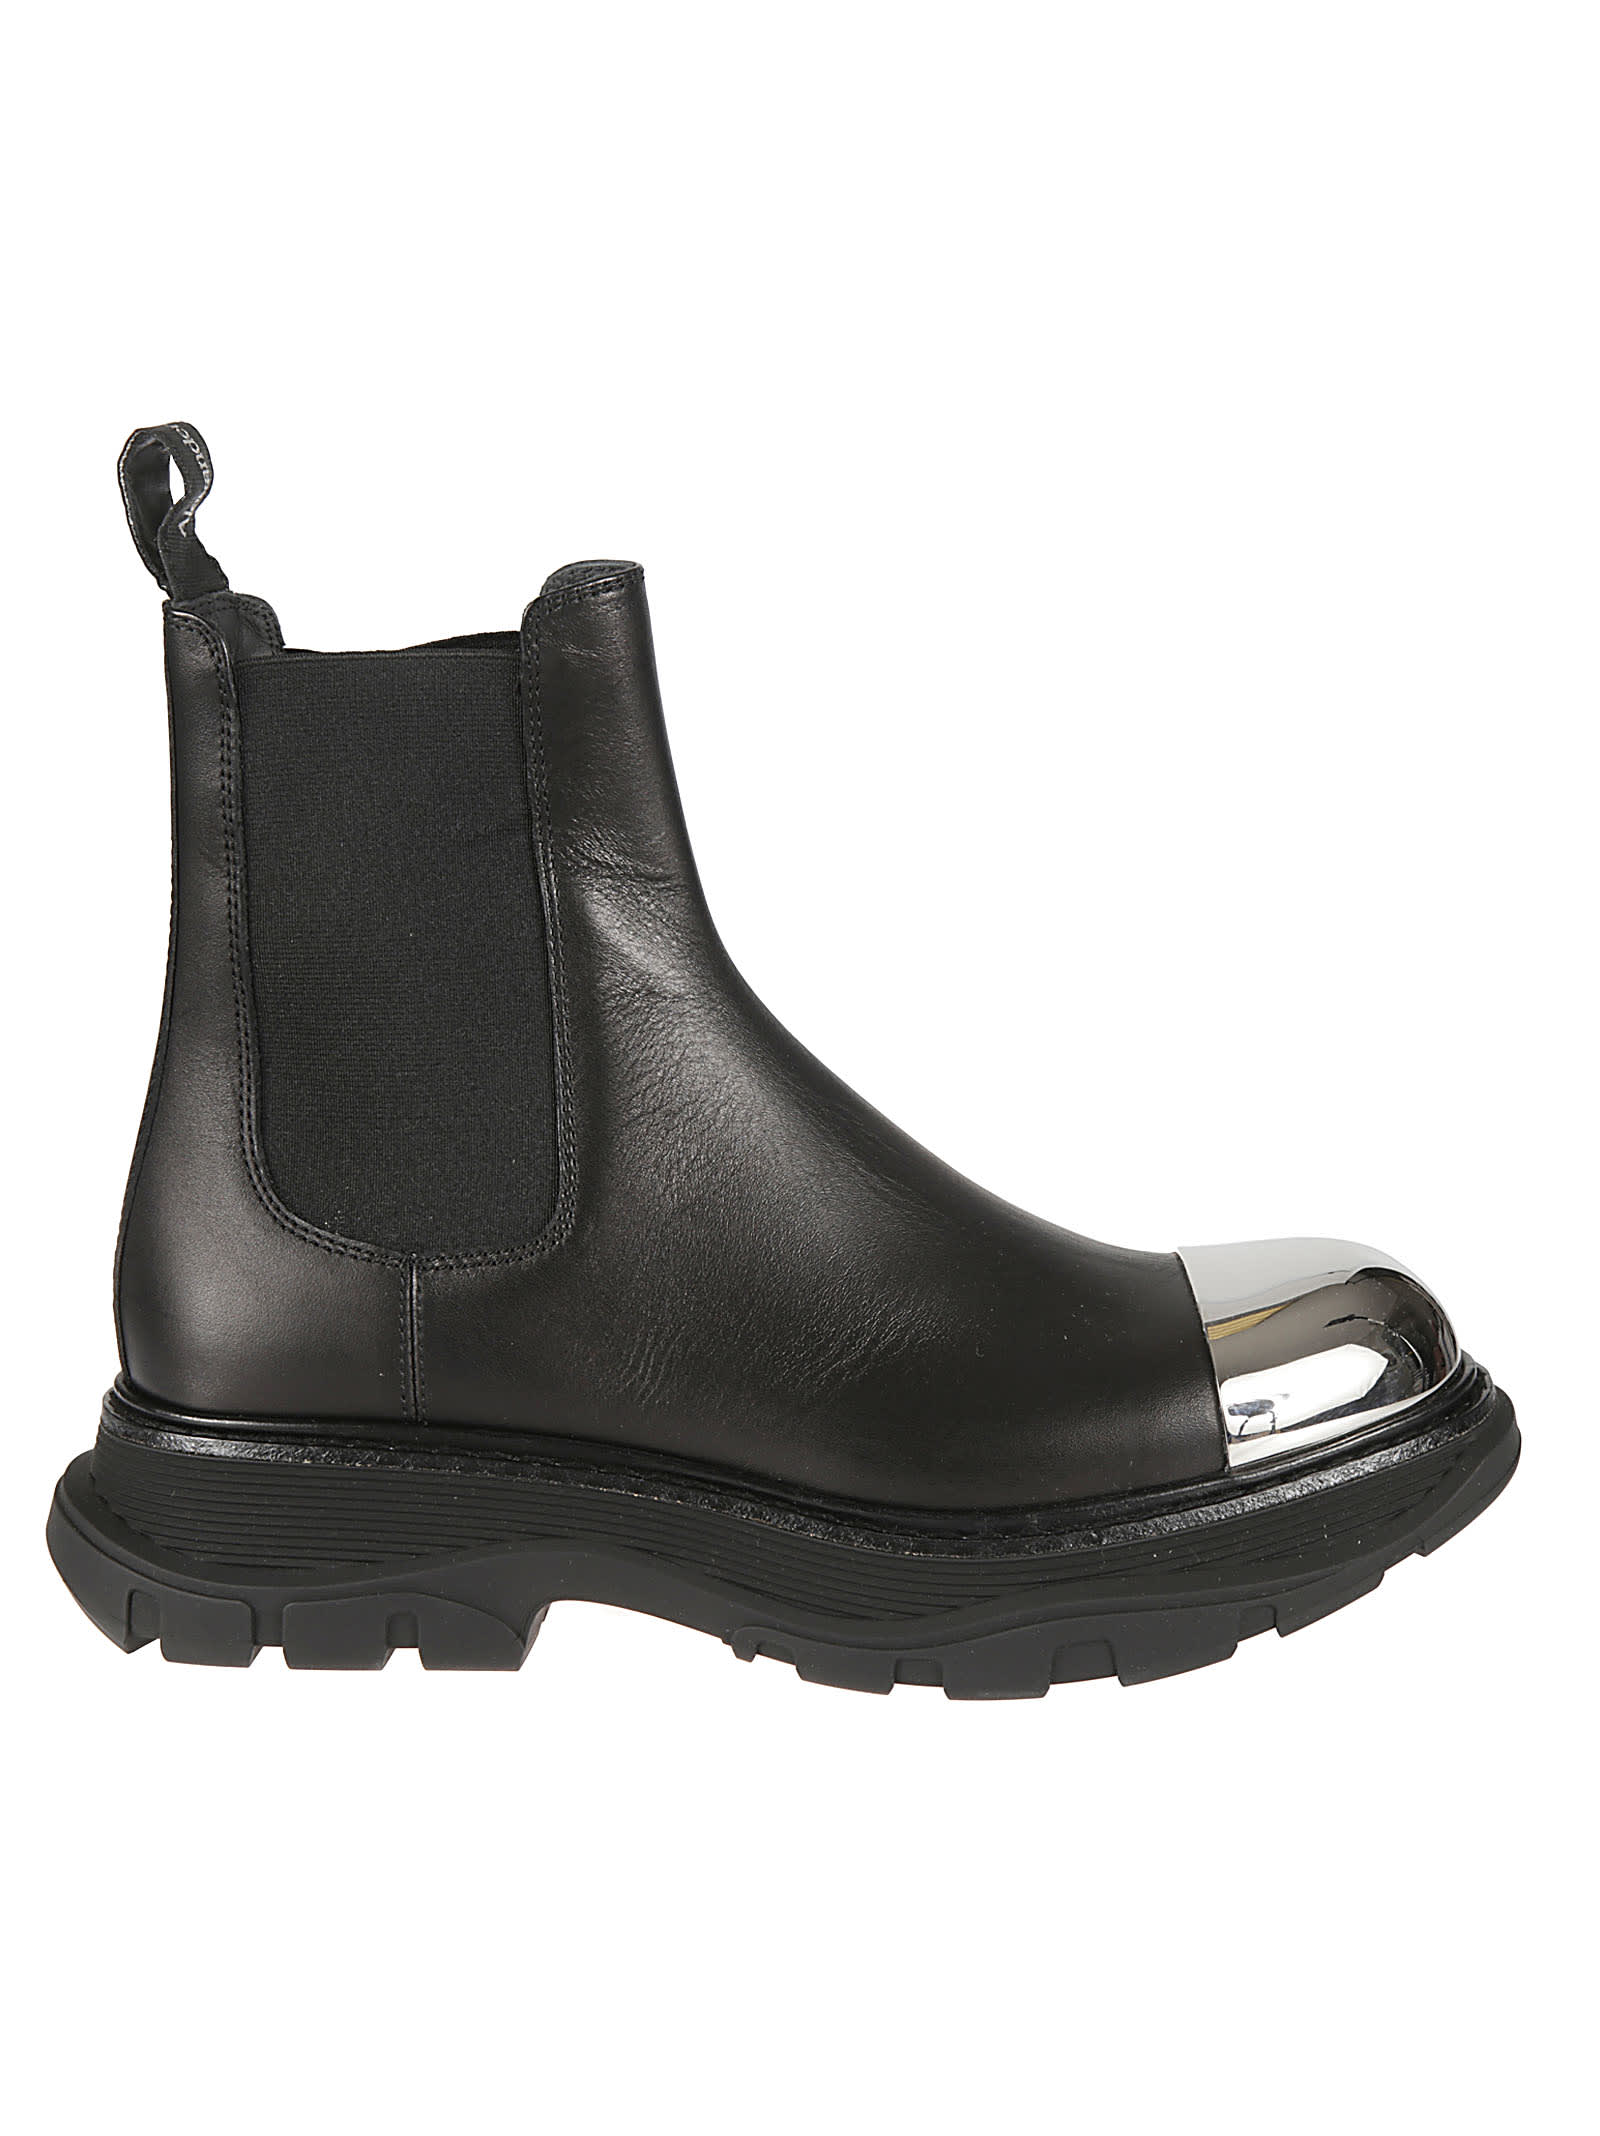 Alexander McQueen Metallic Toe Cap Ankle Boots